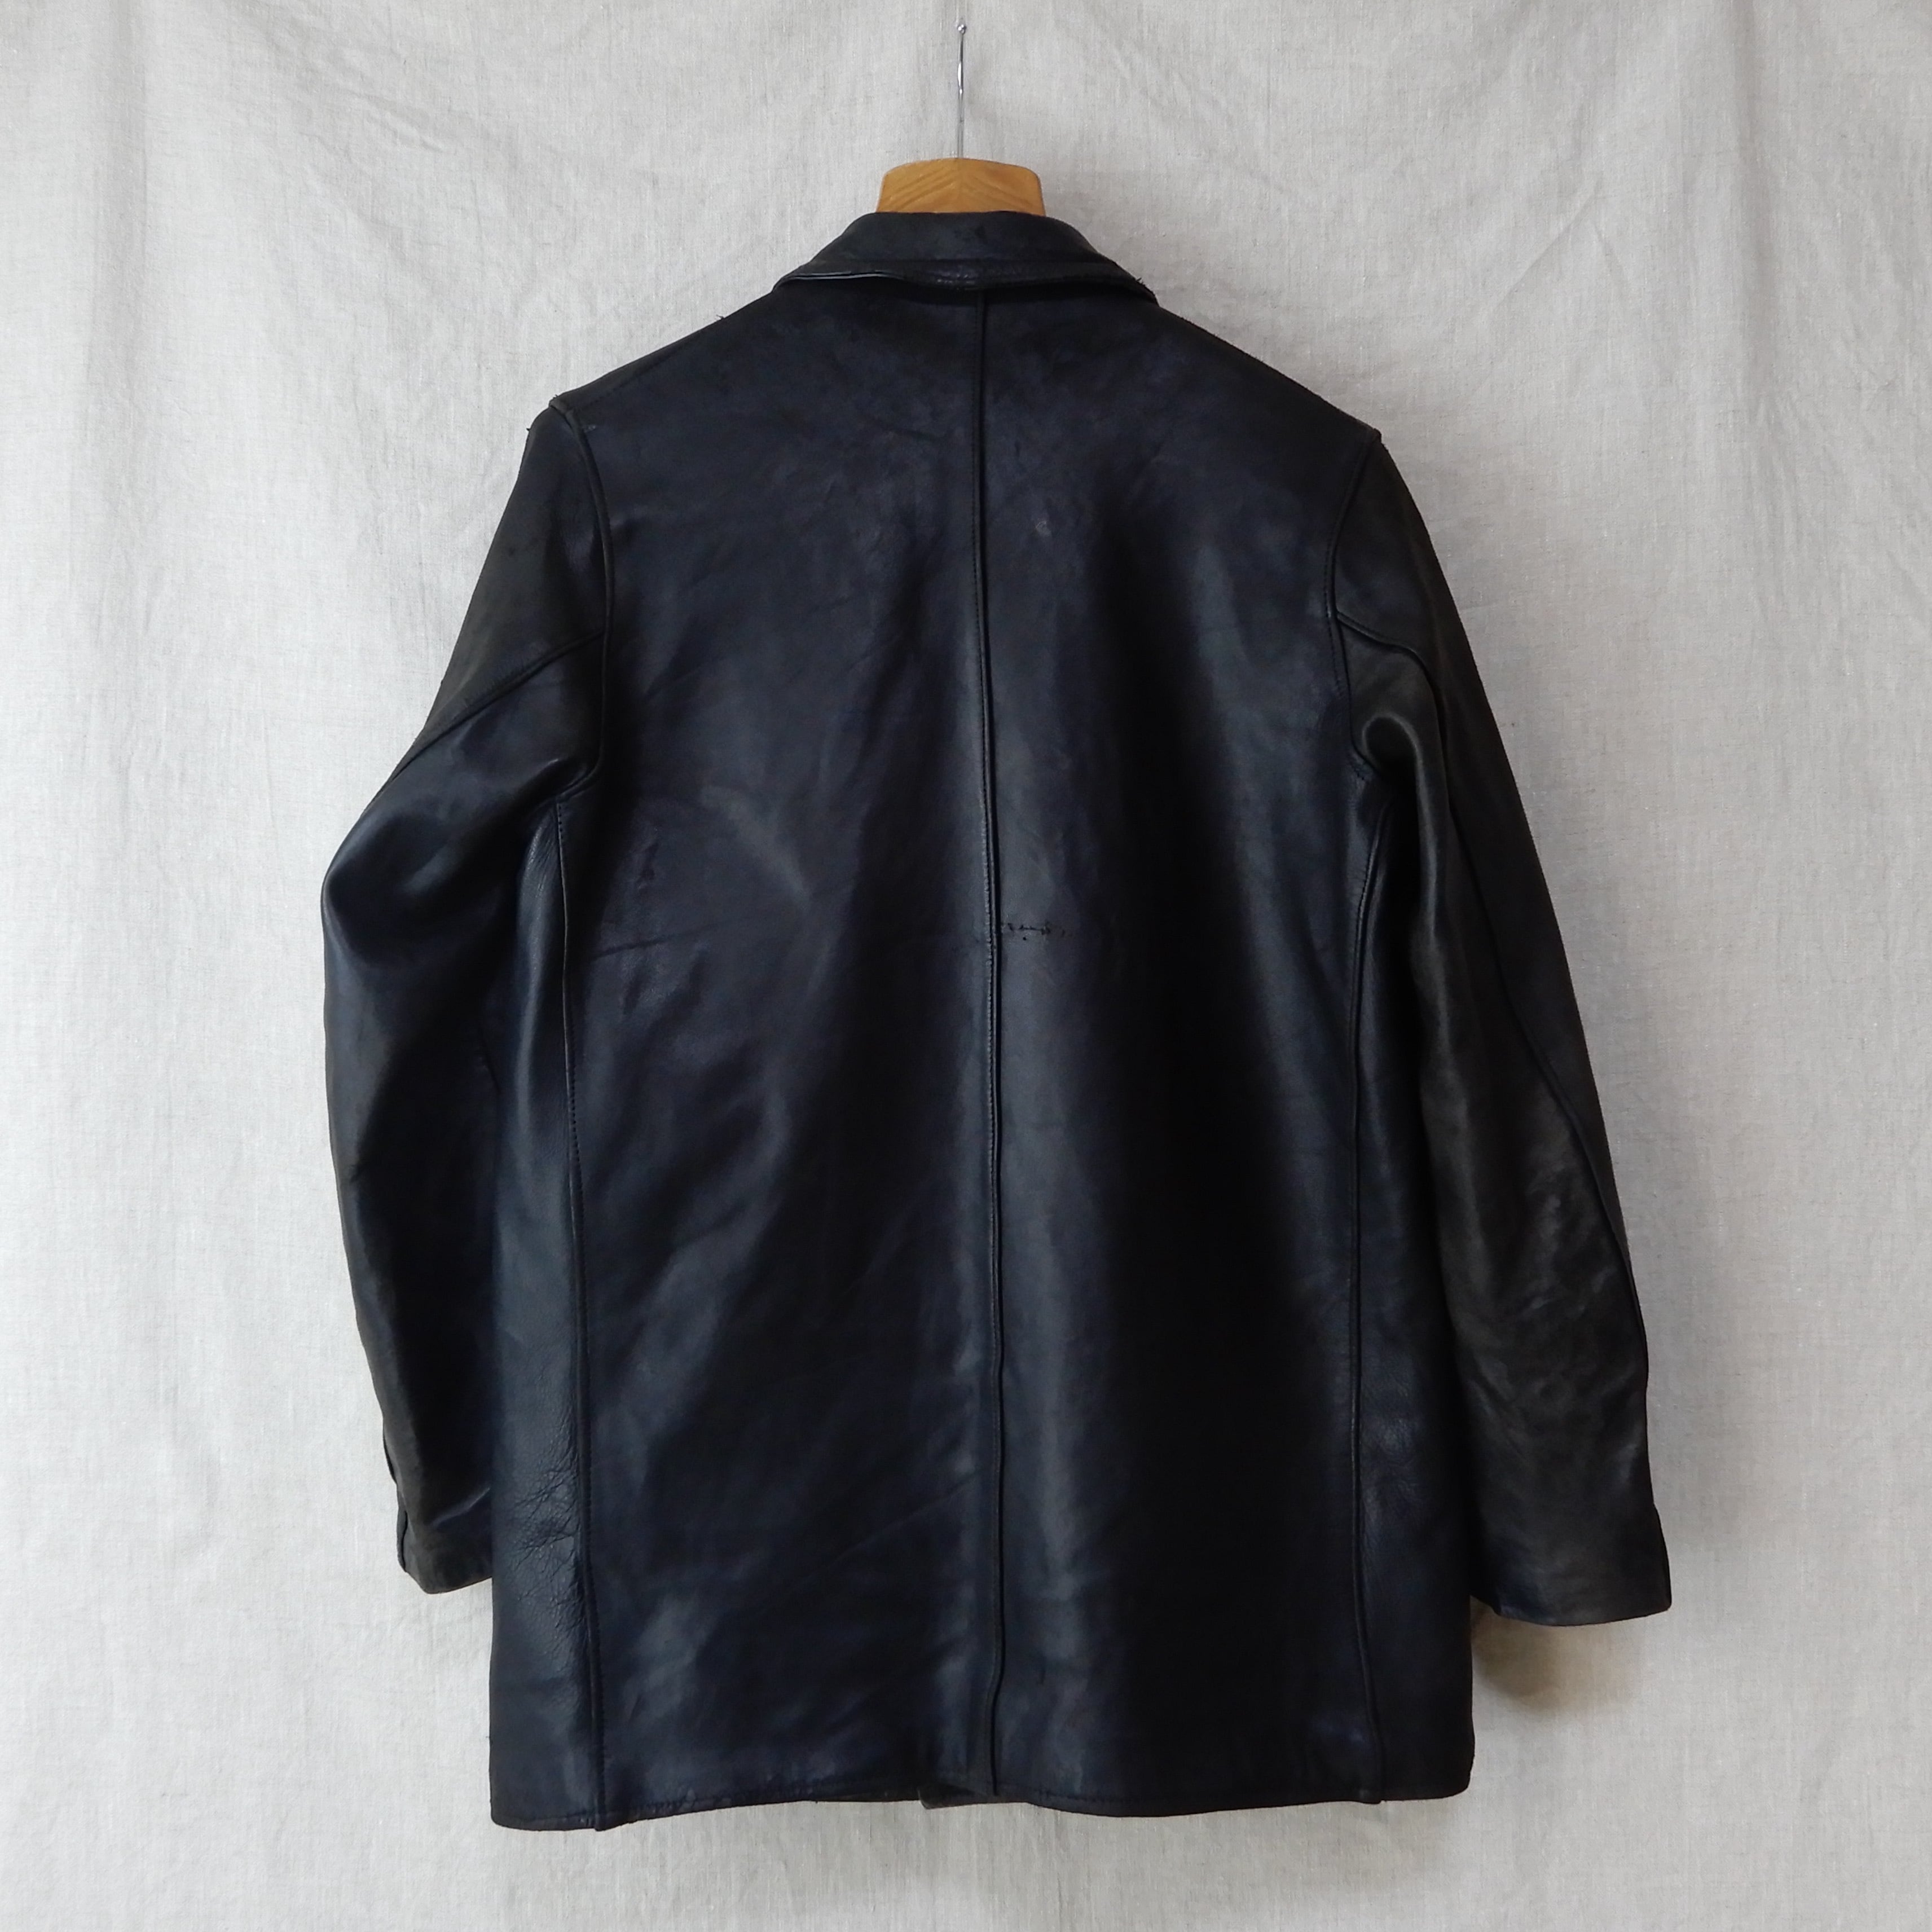 French Work Leather Jacket Black Le Corbusier Jacket | Loki ...